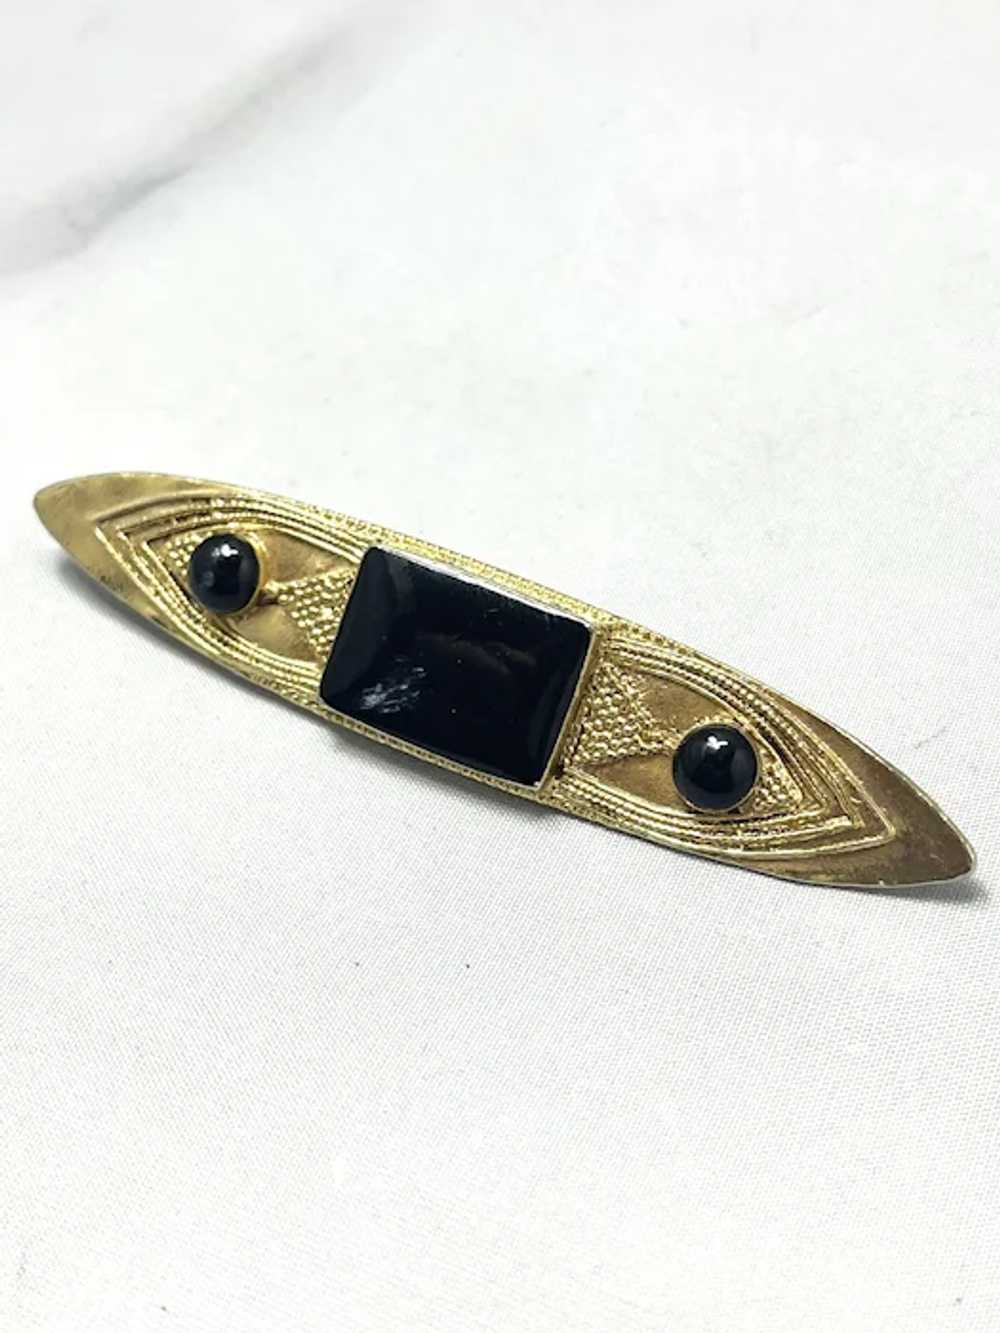 Vintage Black Enamel Gold Brooch Pin - image 3